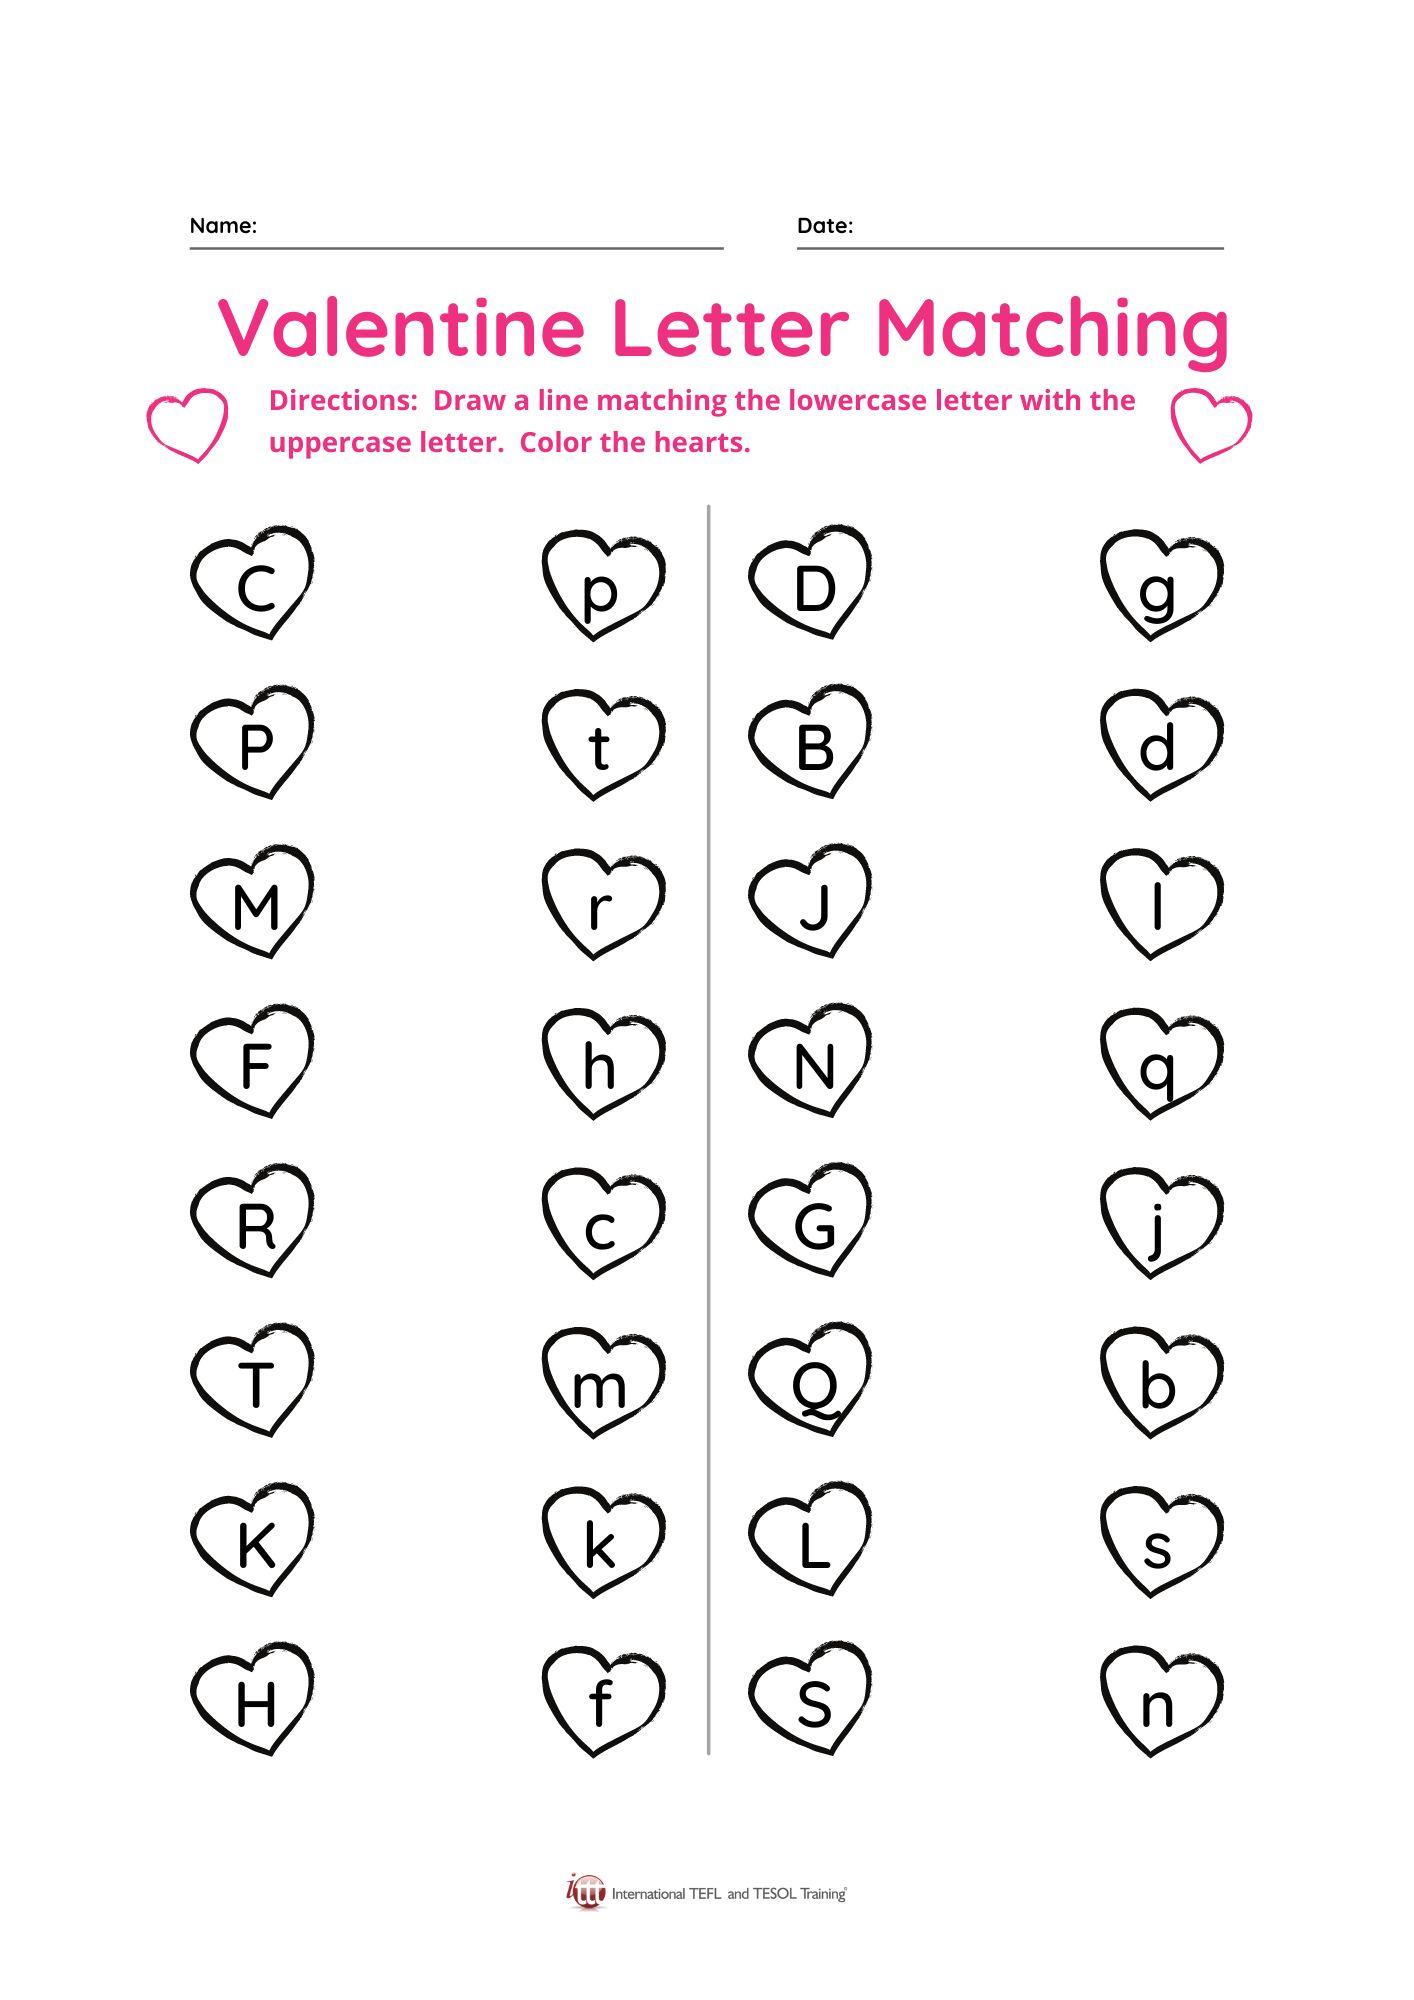 Grammar Corner Valentine Letter Matching